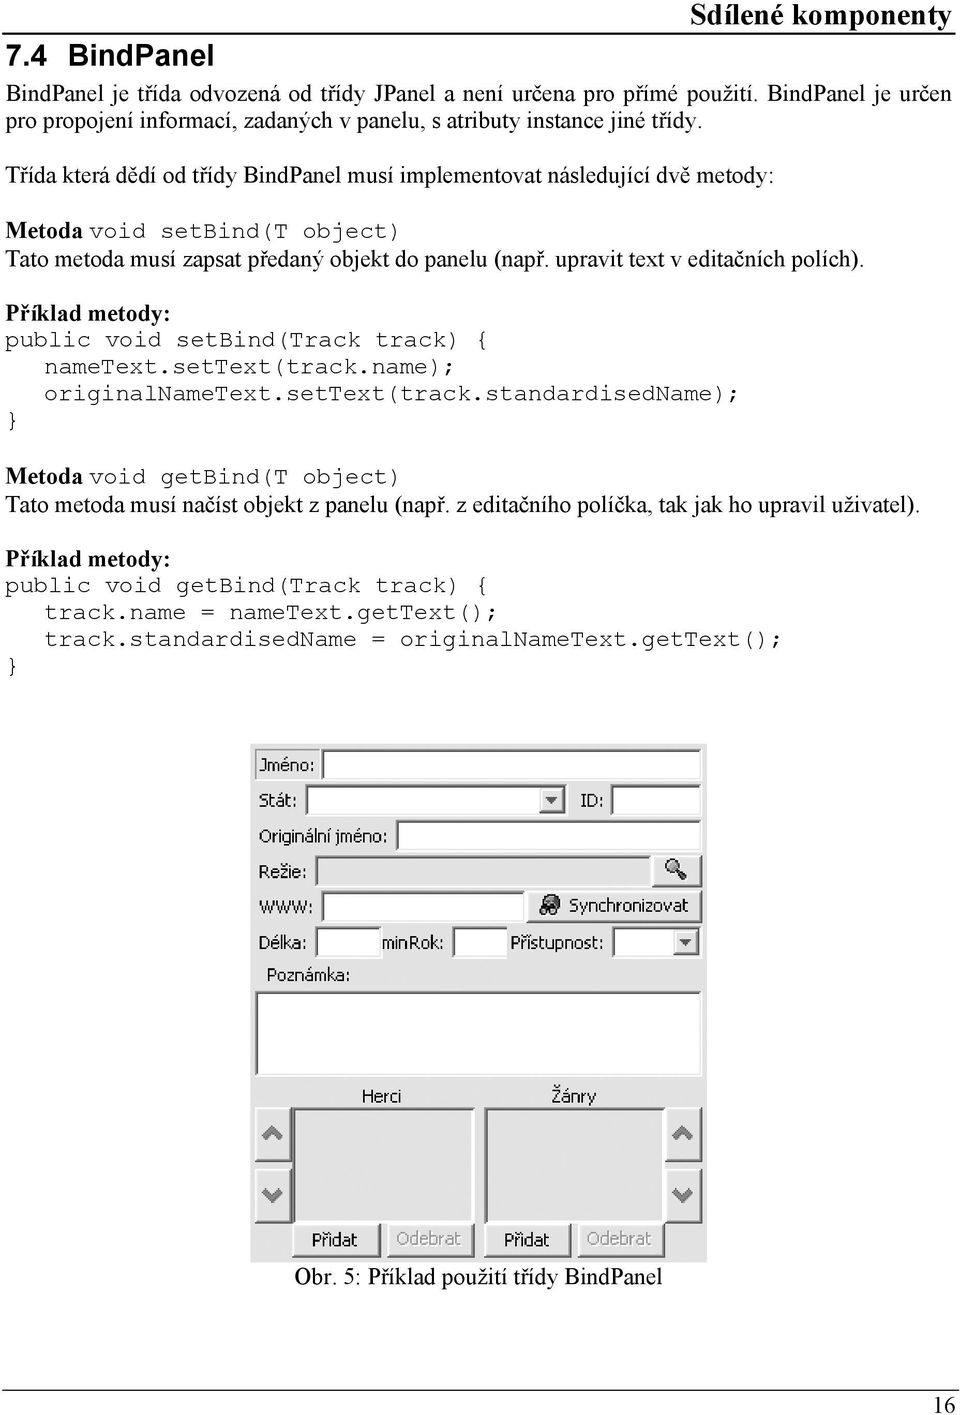 Třída která dědí od třídy BindPanel musí implementovat následující dvě metody: Metoda void setbind(t object) Tato metoda musí zapsat předaný objekt do panelu (např. upravit text v editačních polích).